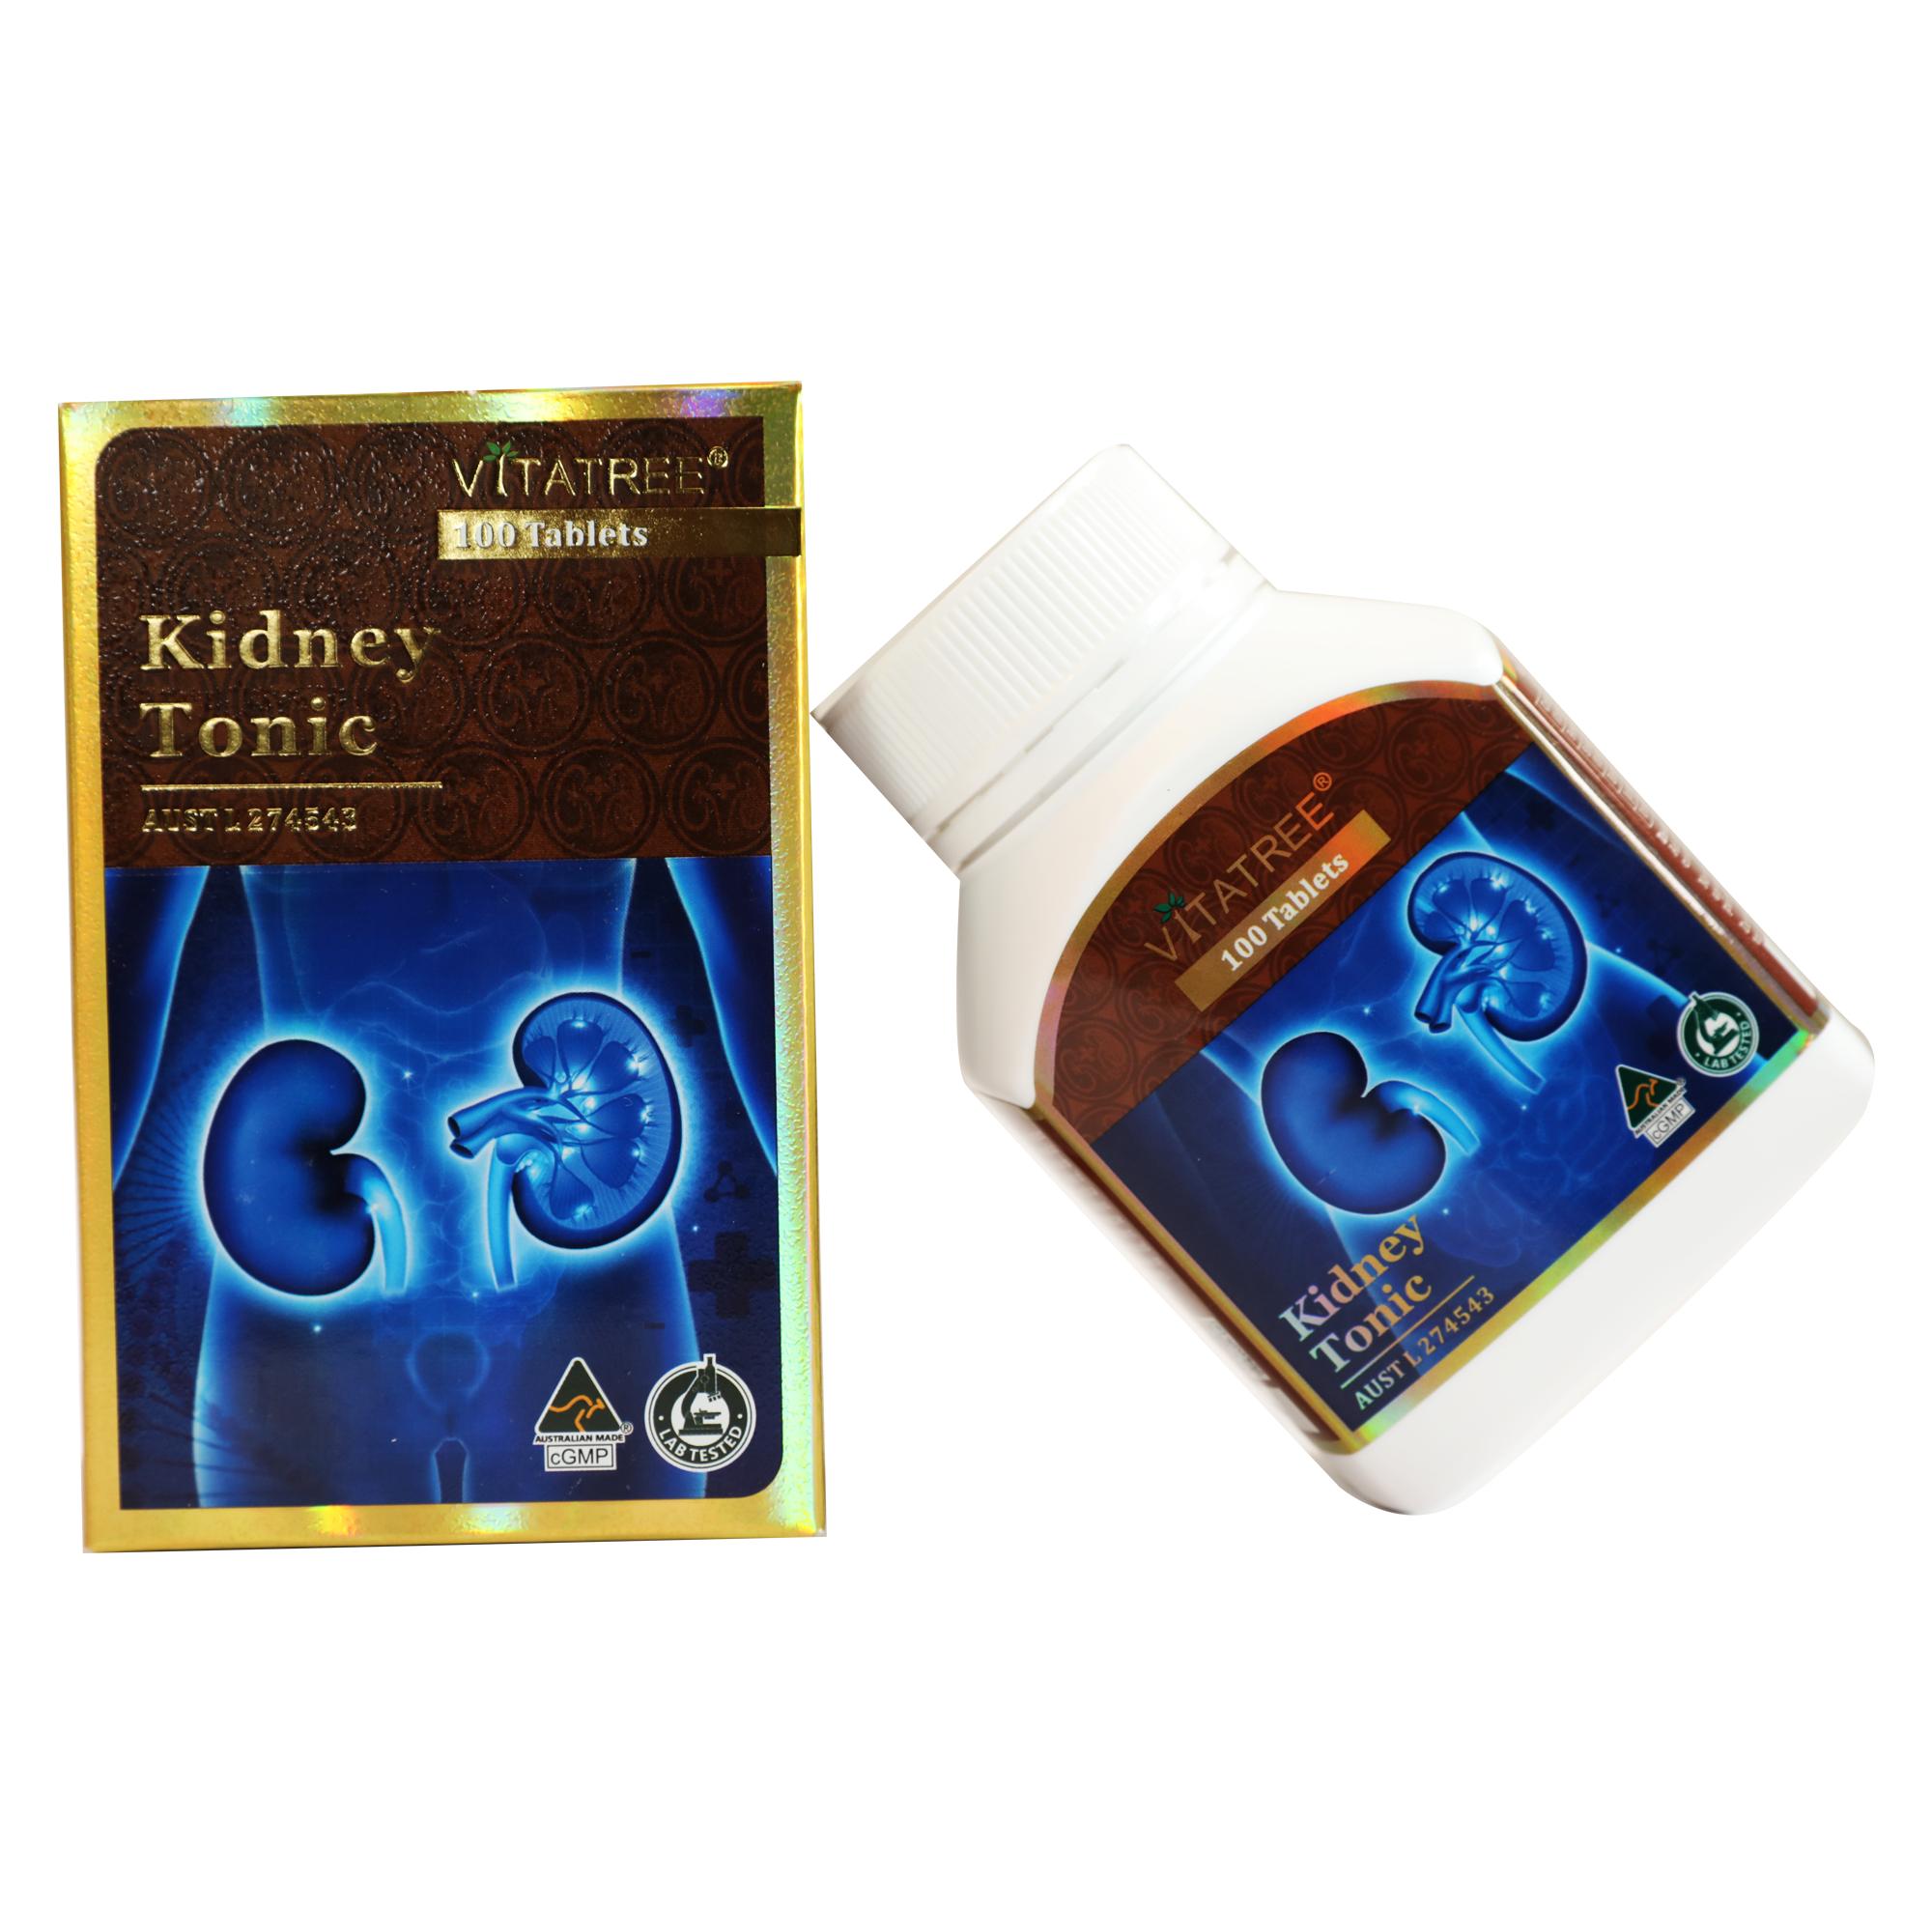 [HCM]Hỗ Trợ Giải Độc Thận Kidney Tonic Vitatree 100 capsules - HÀNG ÚC CHÍNH HÃNG